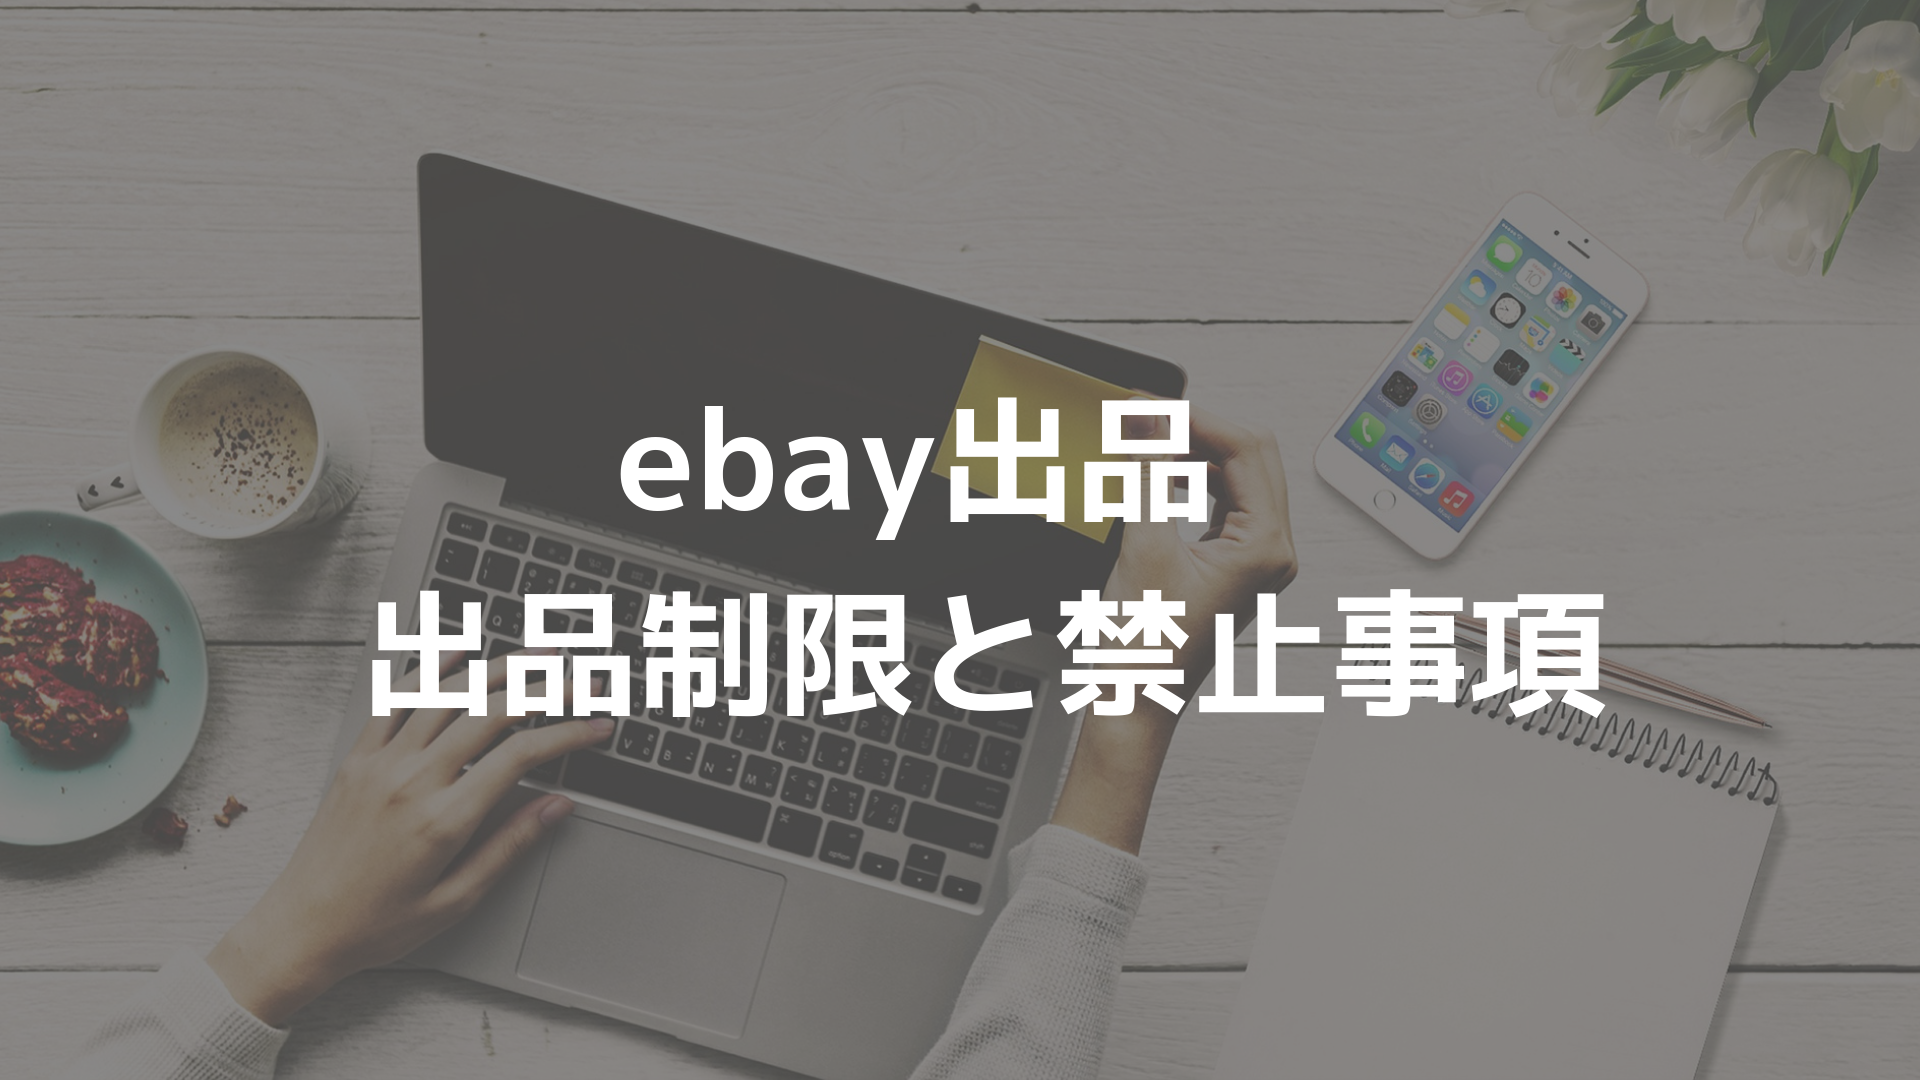 初心者向け Ebay出品 出品制限 禁止事項 オクルト